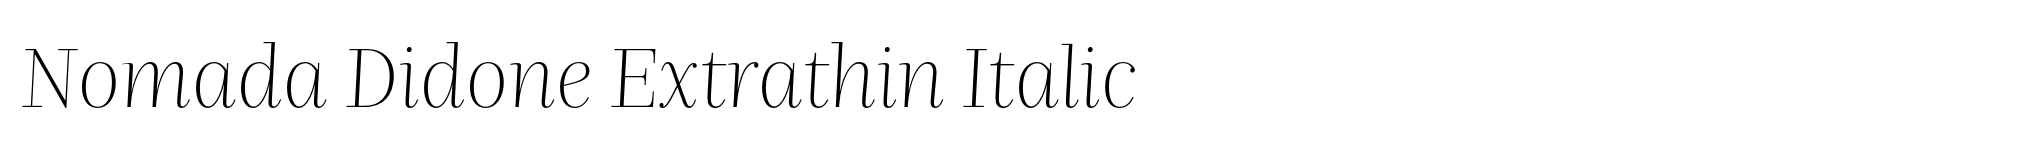 Nomada Didone Extrathin Italic image